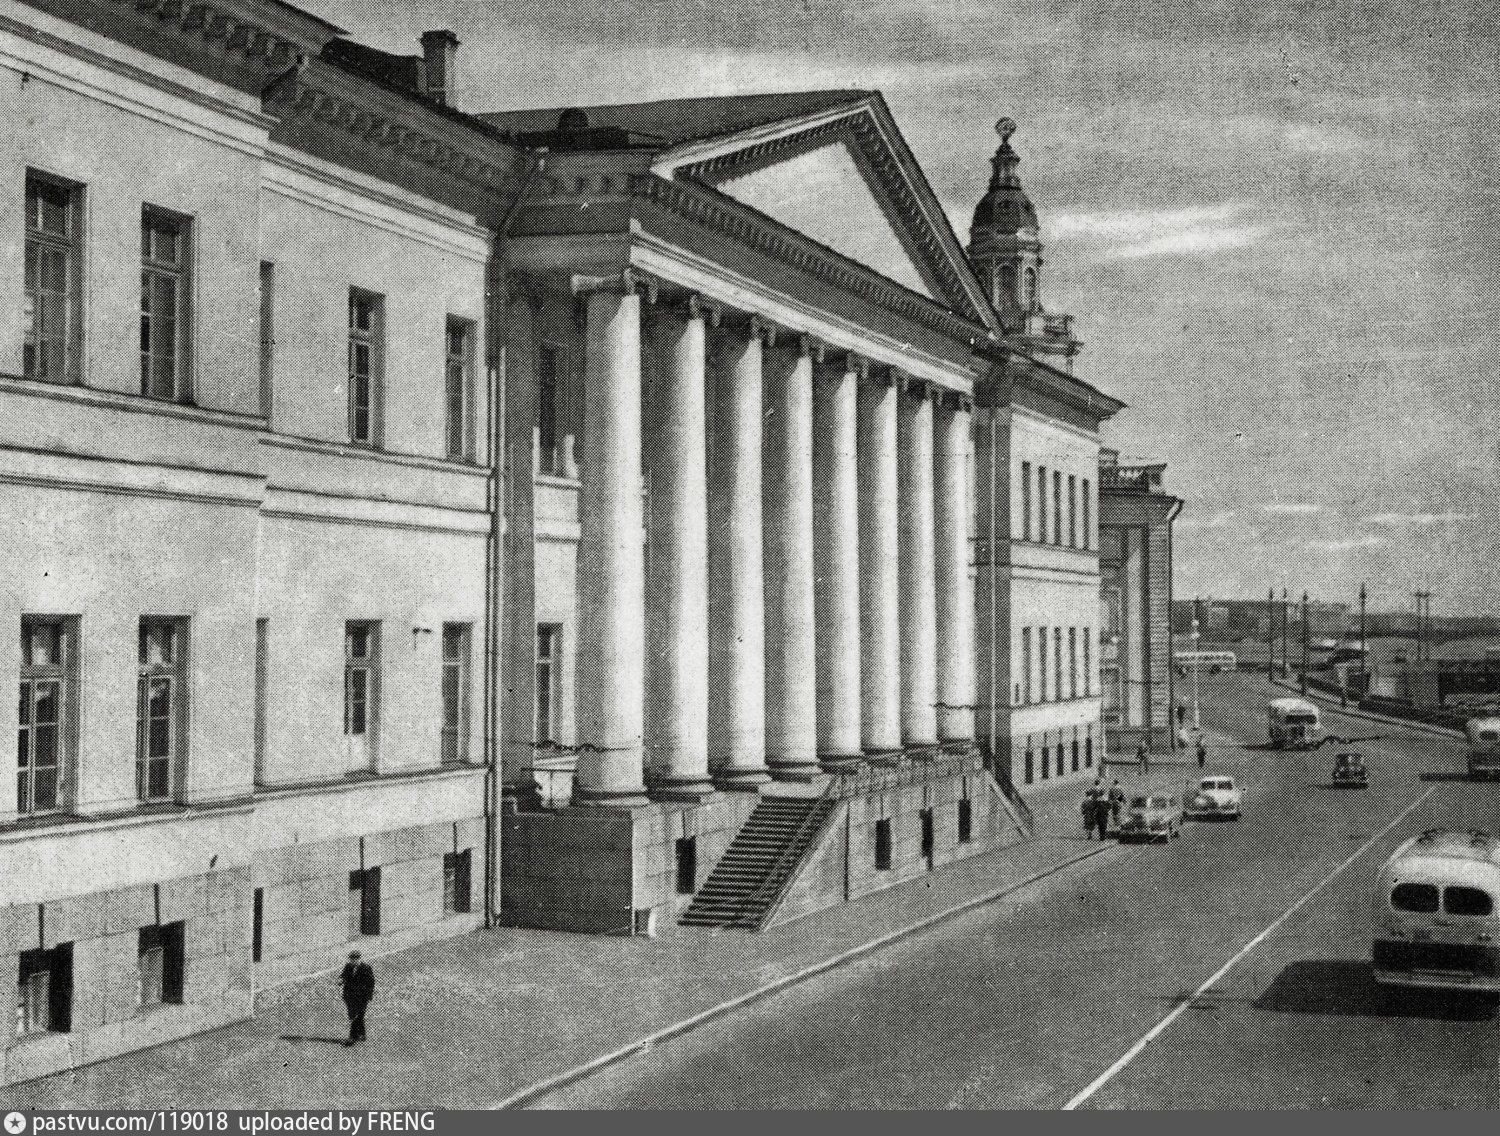 старое здание академии наук в москве